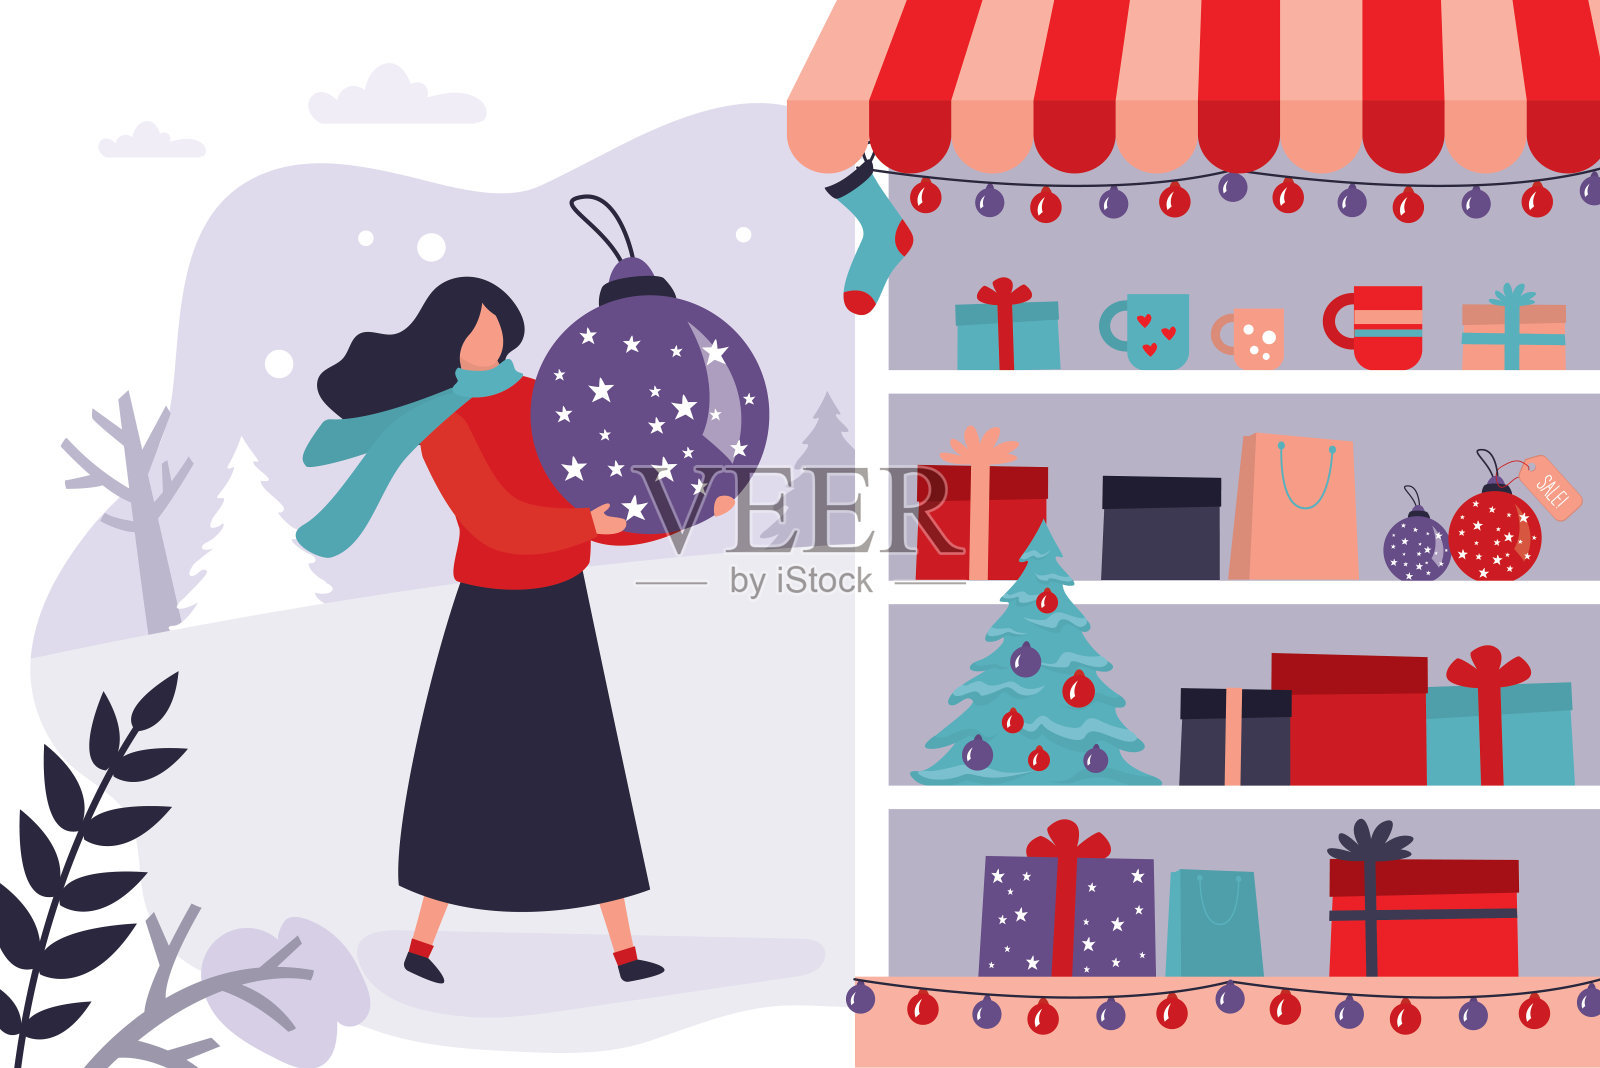 商店橱窗里有圣诞装饰品和礼品盒。女性角色抱着一个大圣诞树玩具。冬季折扣和季节销售的概念插画图片素材